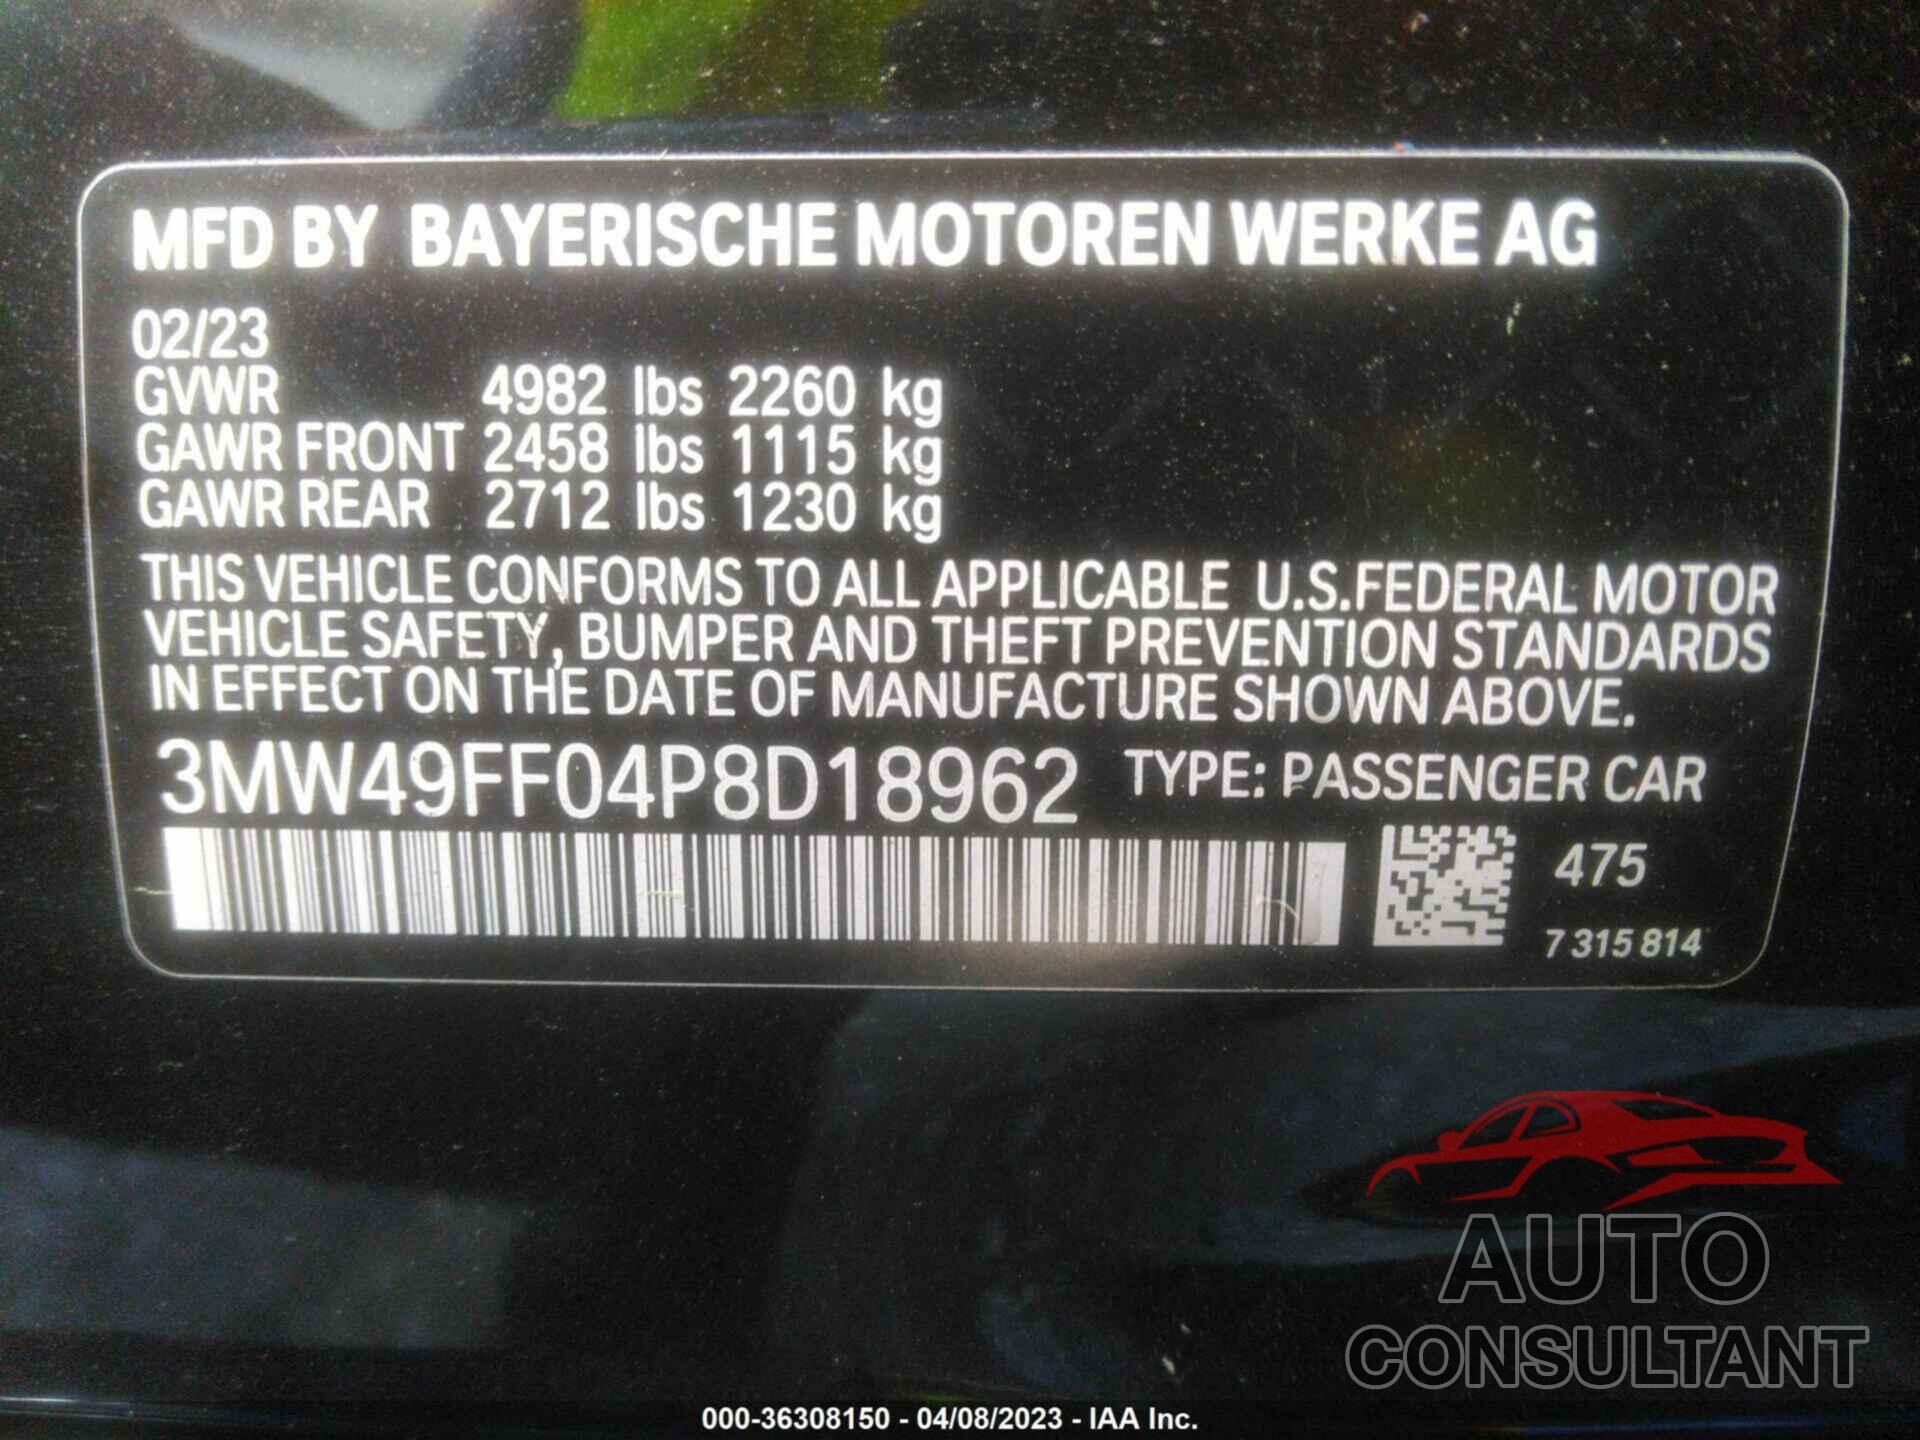 BMW 3 SERIES 2023 - 3MW49FF04P8D18962